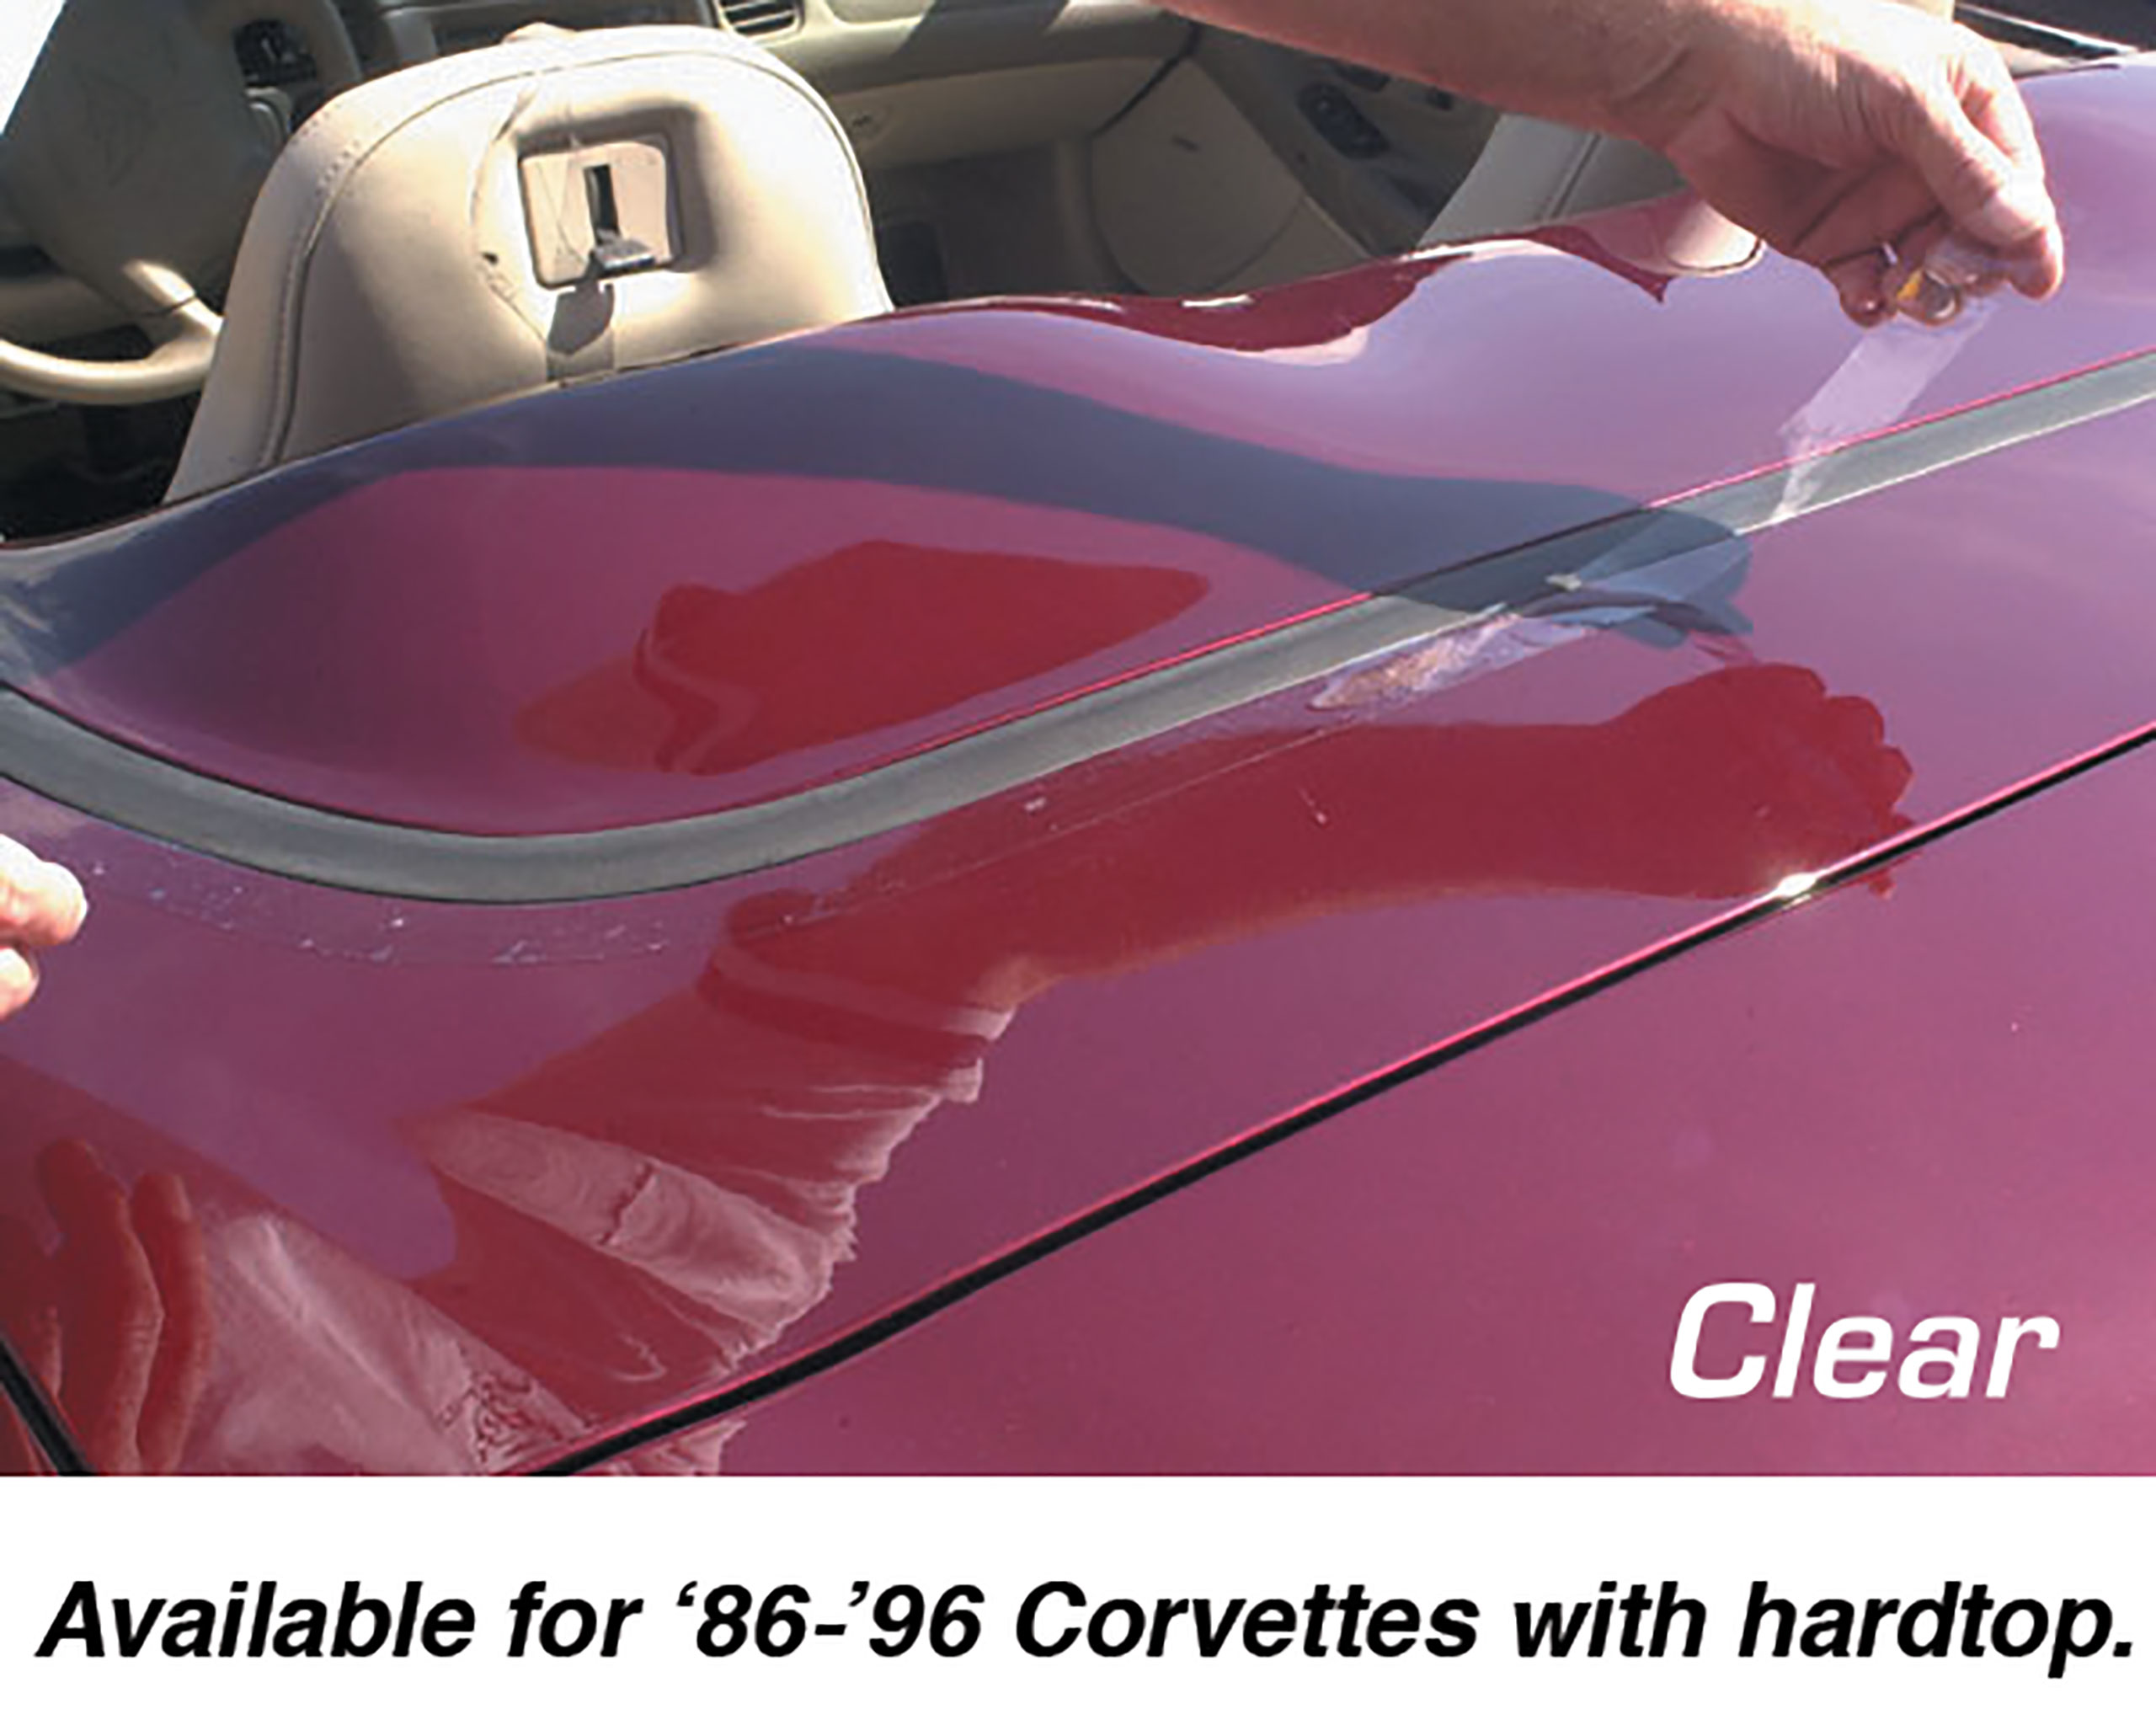 C4 1986-1996 Chevrolet Corvette Deck Lid Protector. Hardtop Clear - CA